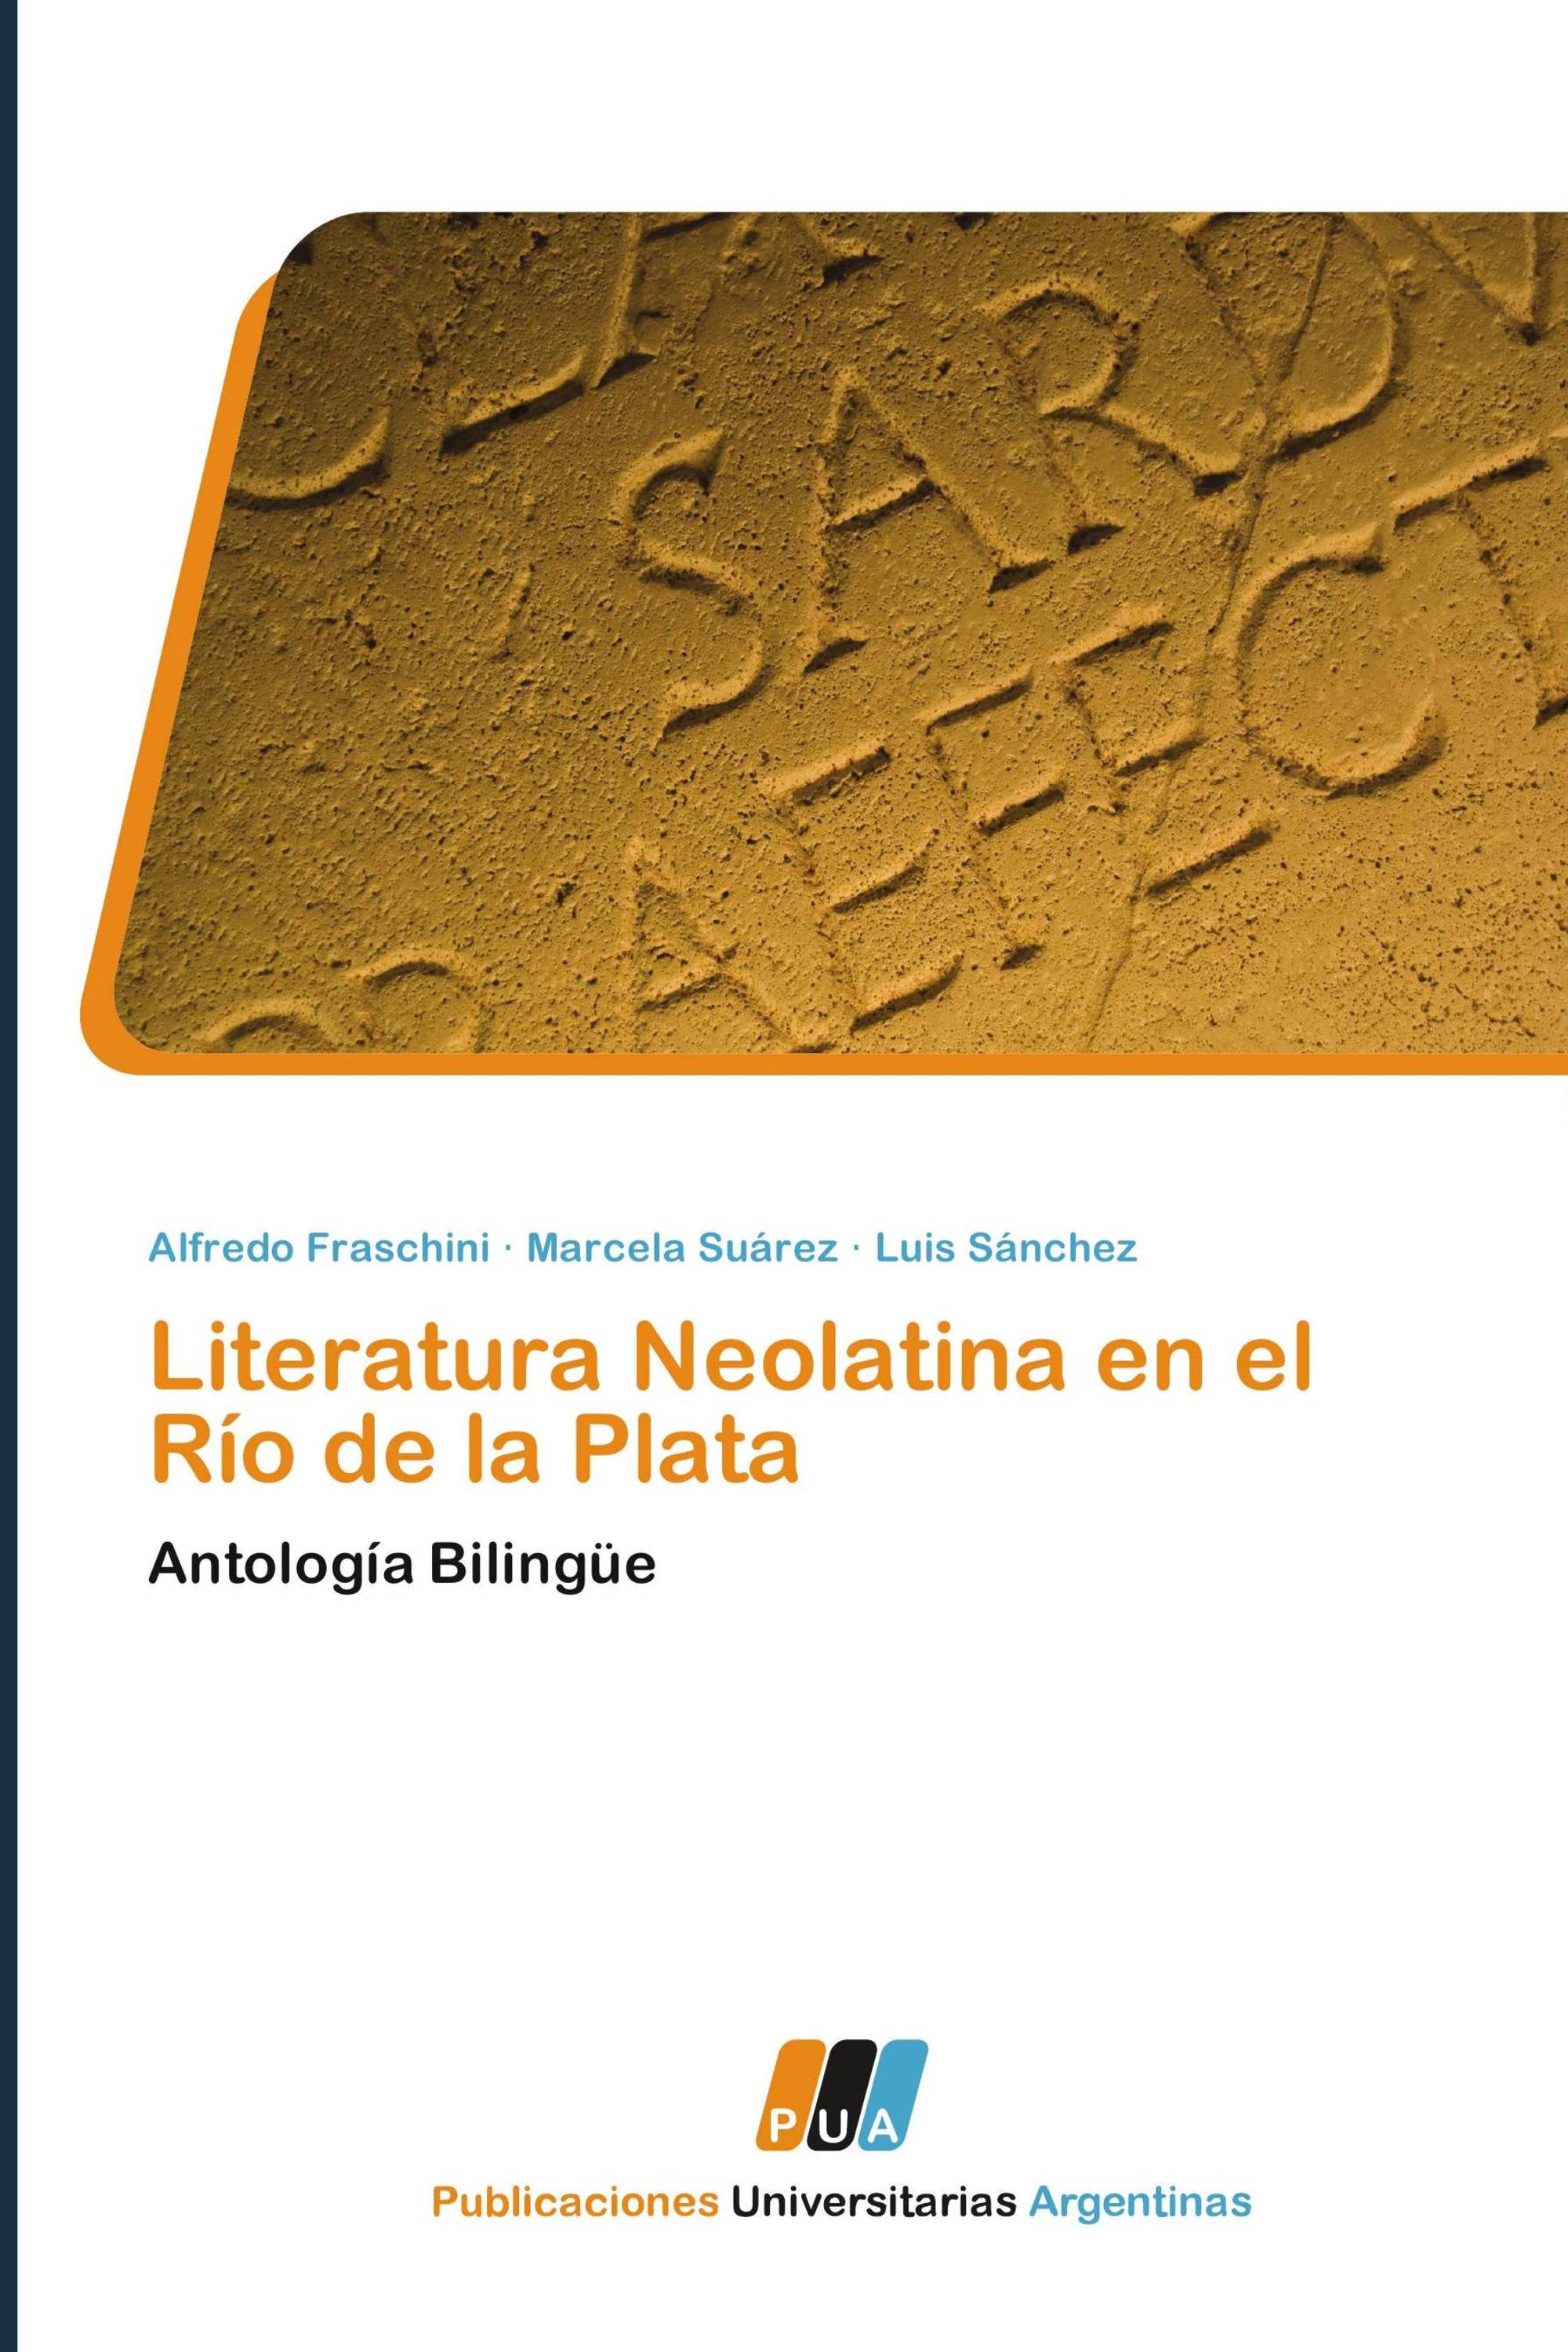 Literatura Neolatina en el Río de la Plata